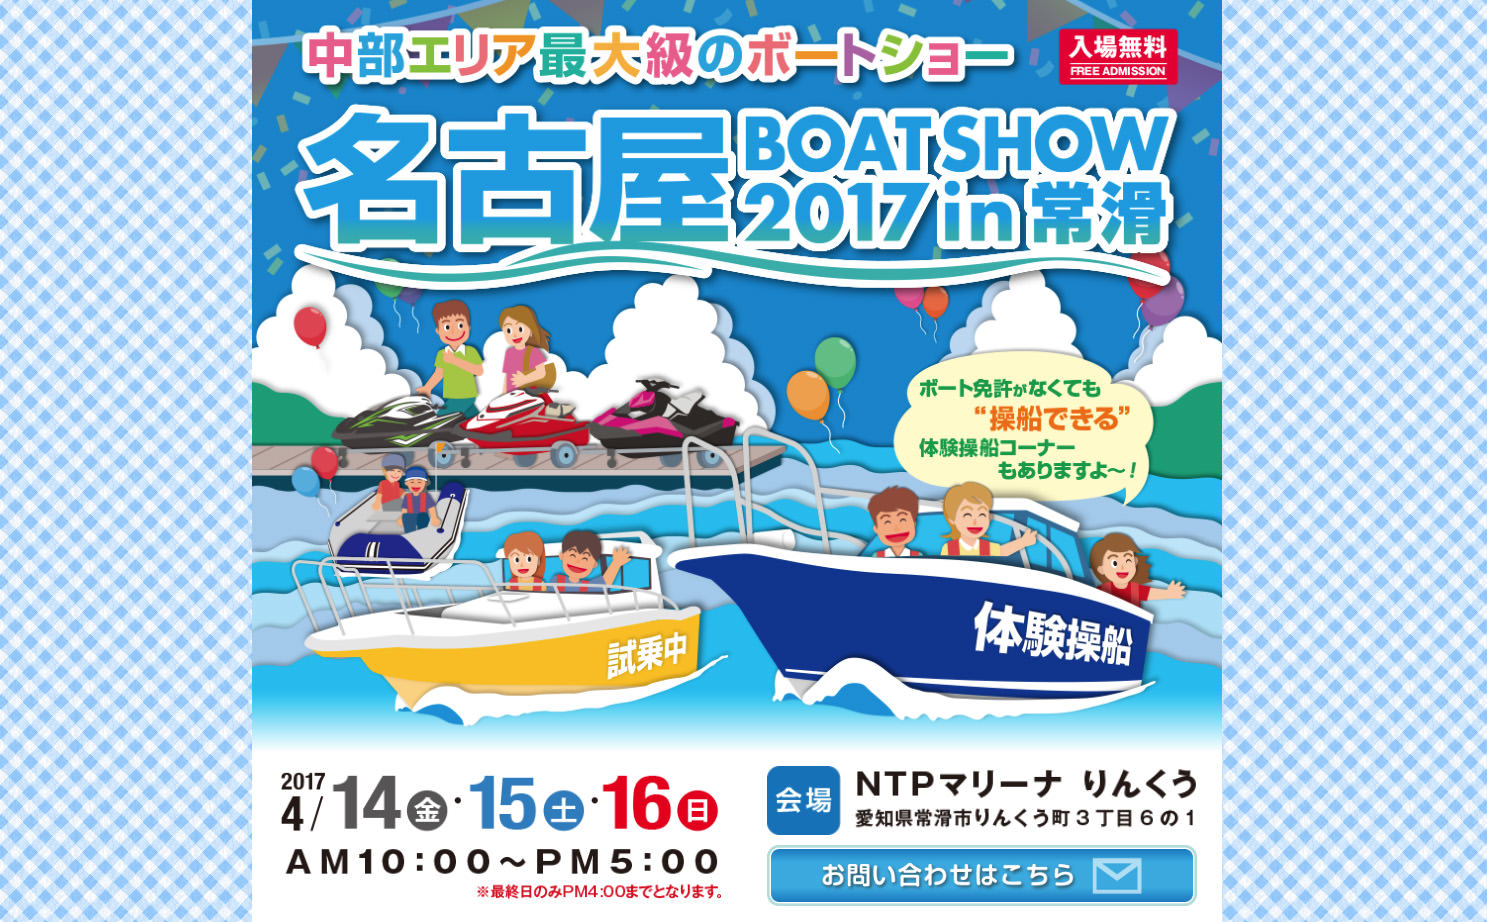 名古屋ボートショー2017 in 常滑 開催決定!!